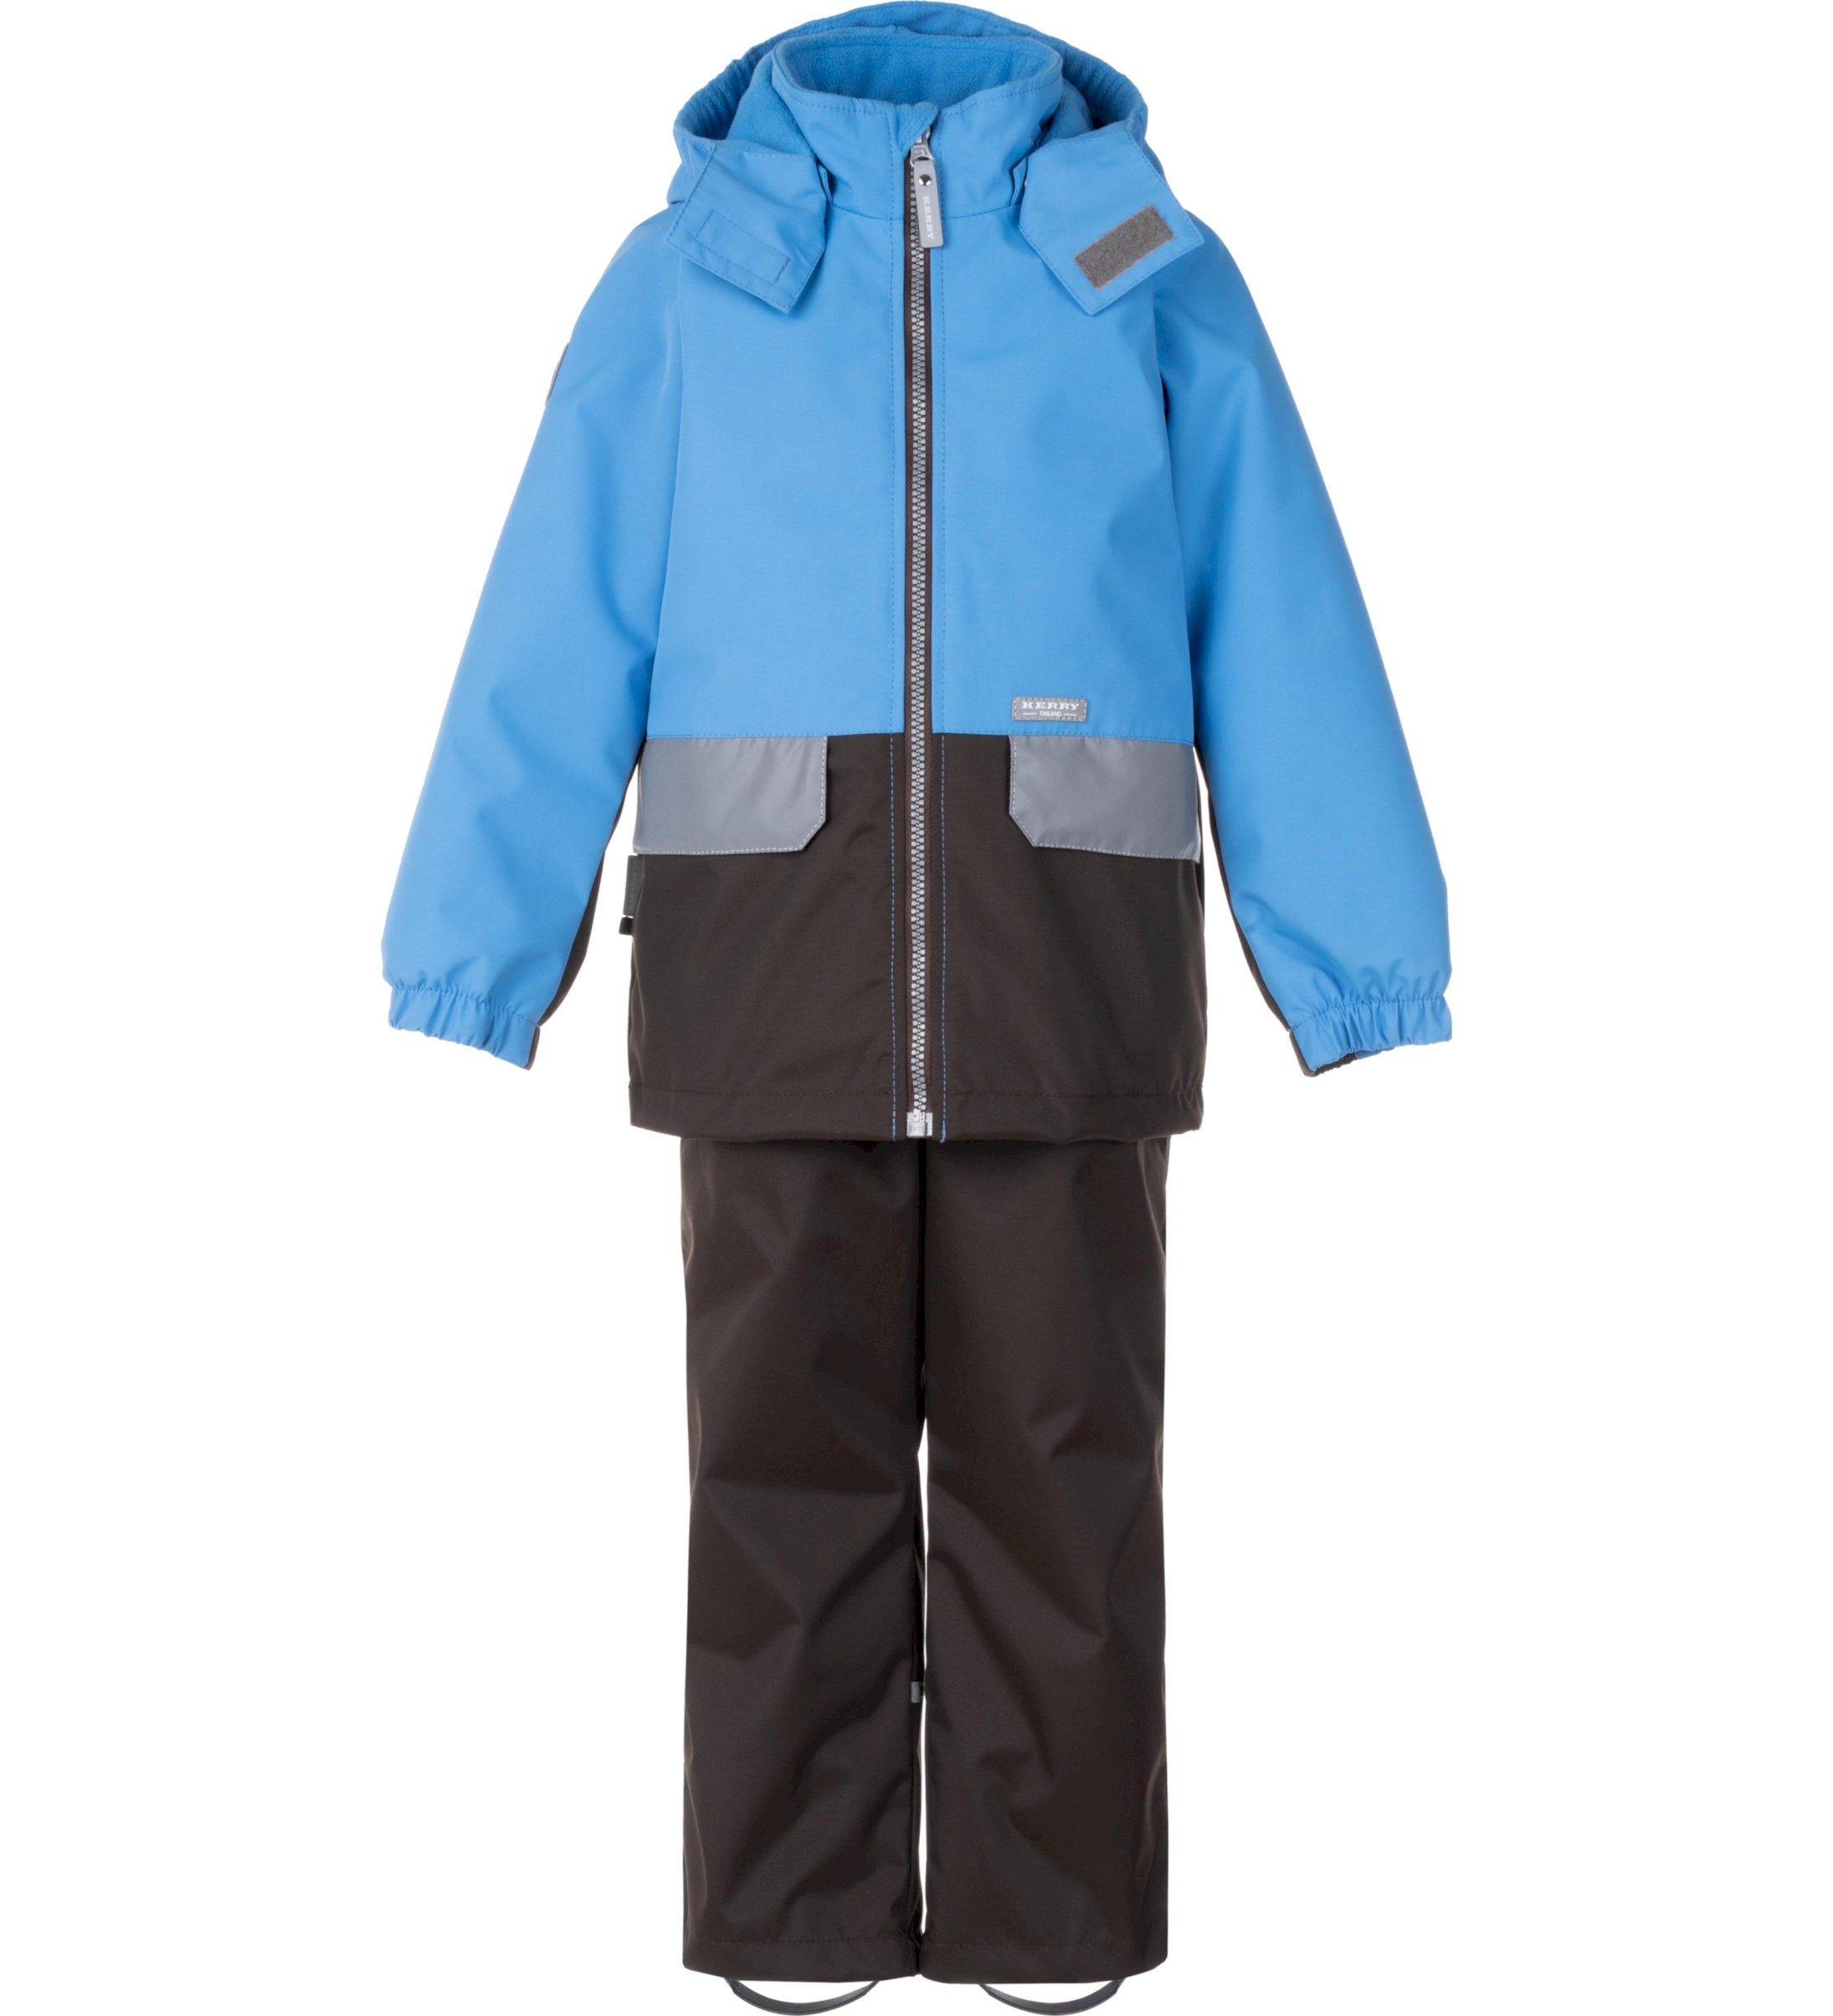 Комплект верхней одежды детский KERRY K24020, голубой; серый, 134